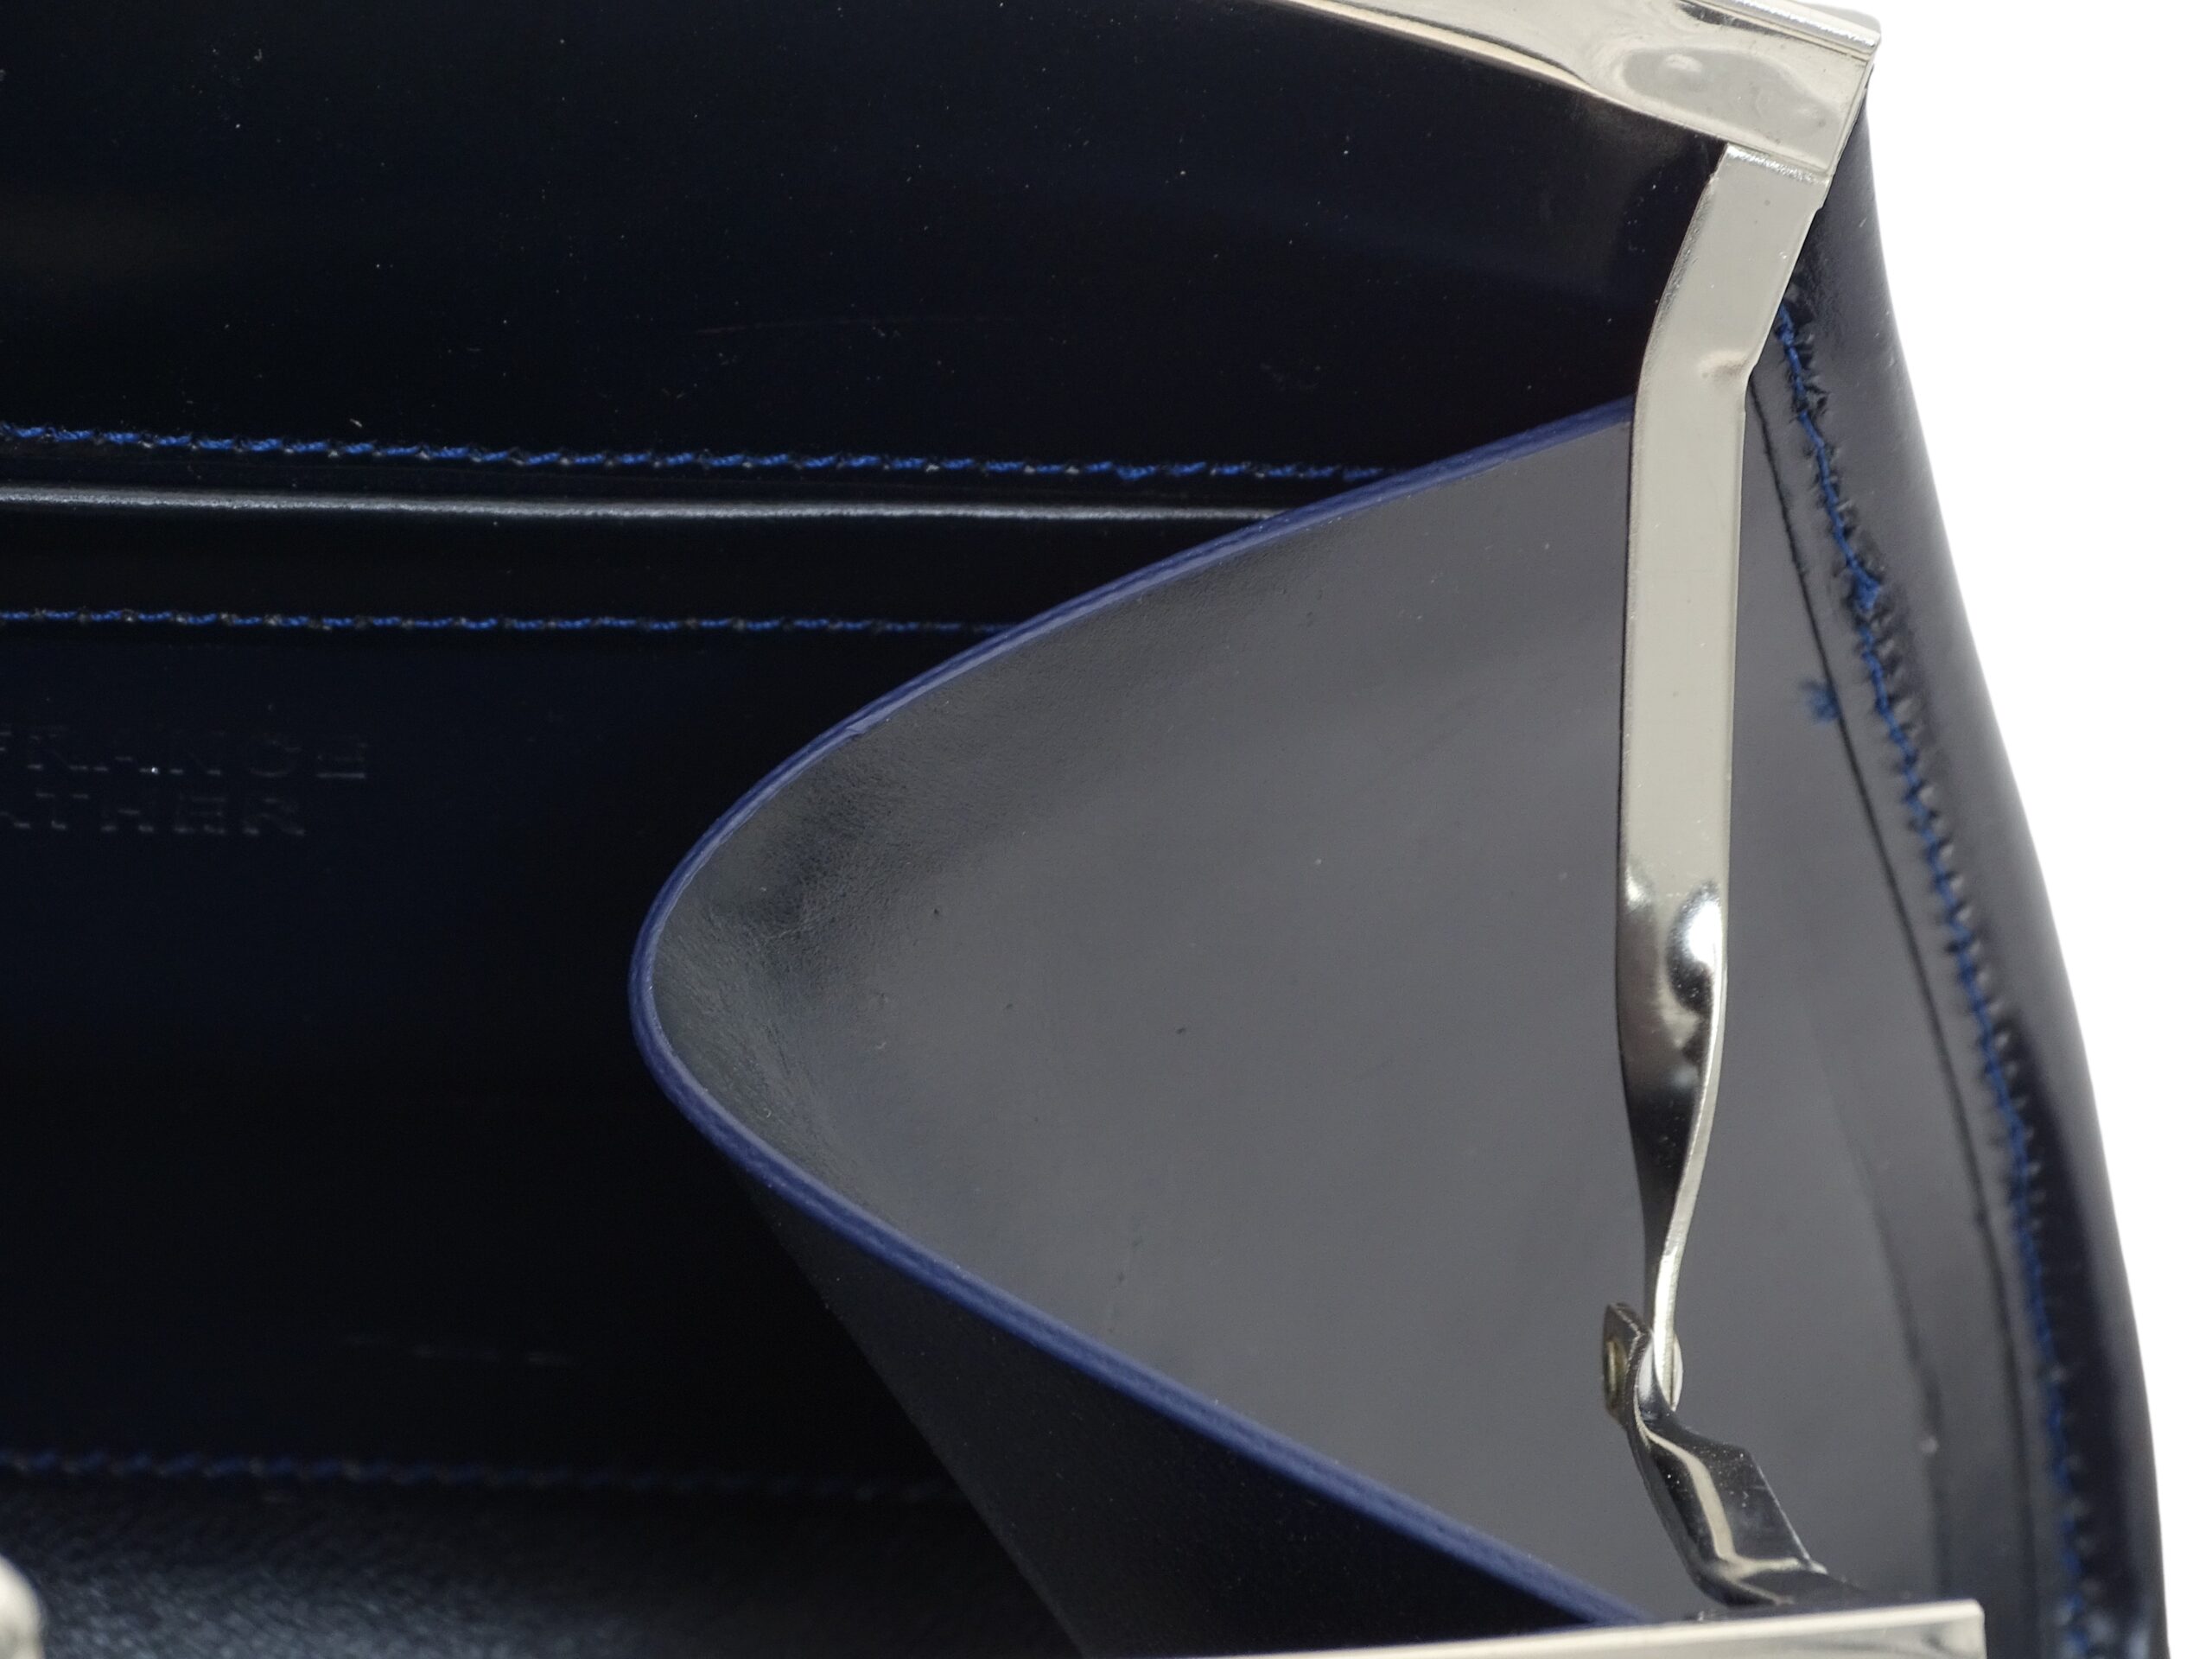 la vue de près du sac marilyne noir met en évidence le magnifique fil de lin bleu utilisé pour coudre les pièces de cuir de haute qualité. La haute maroquinerie française est mise à l'honneur avec ce sac à main de qualité supérieure en cuir véritable.